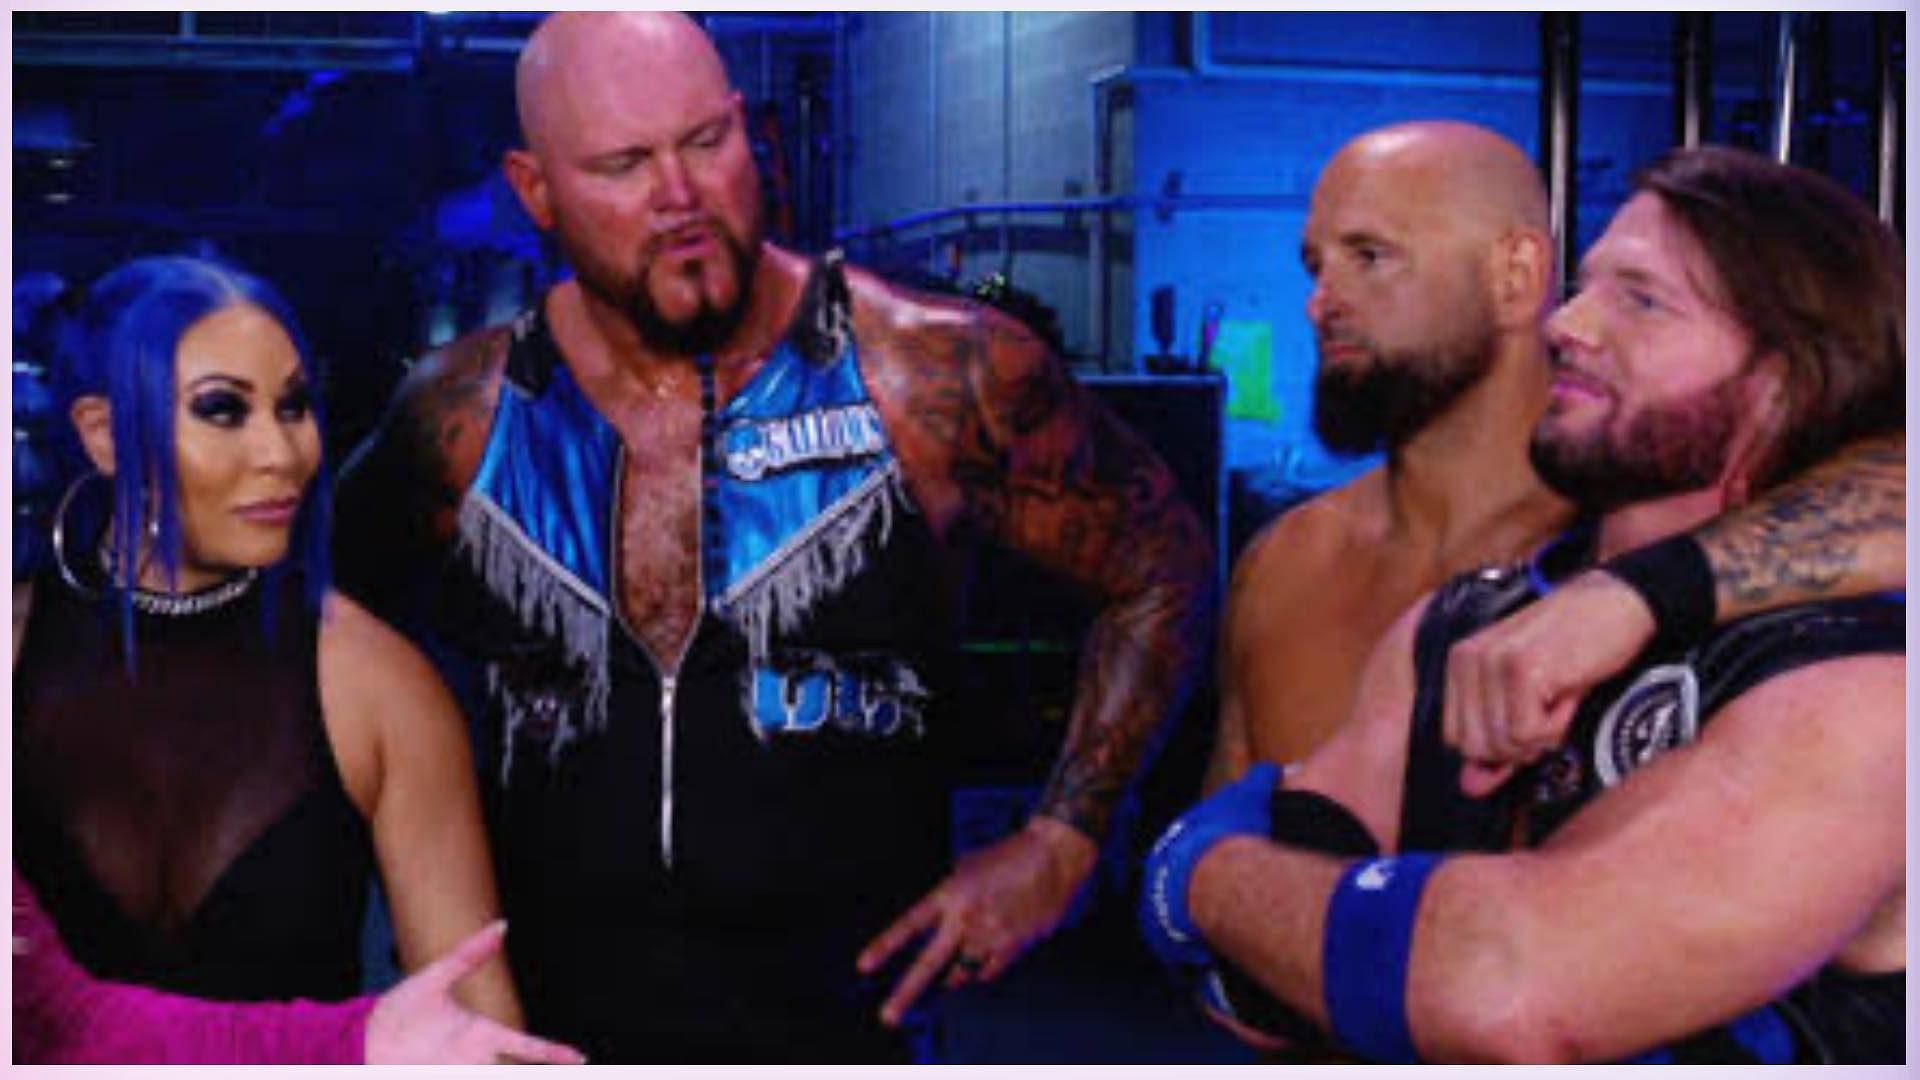 Members of The Original Club appeared on WWE NXT this week